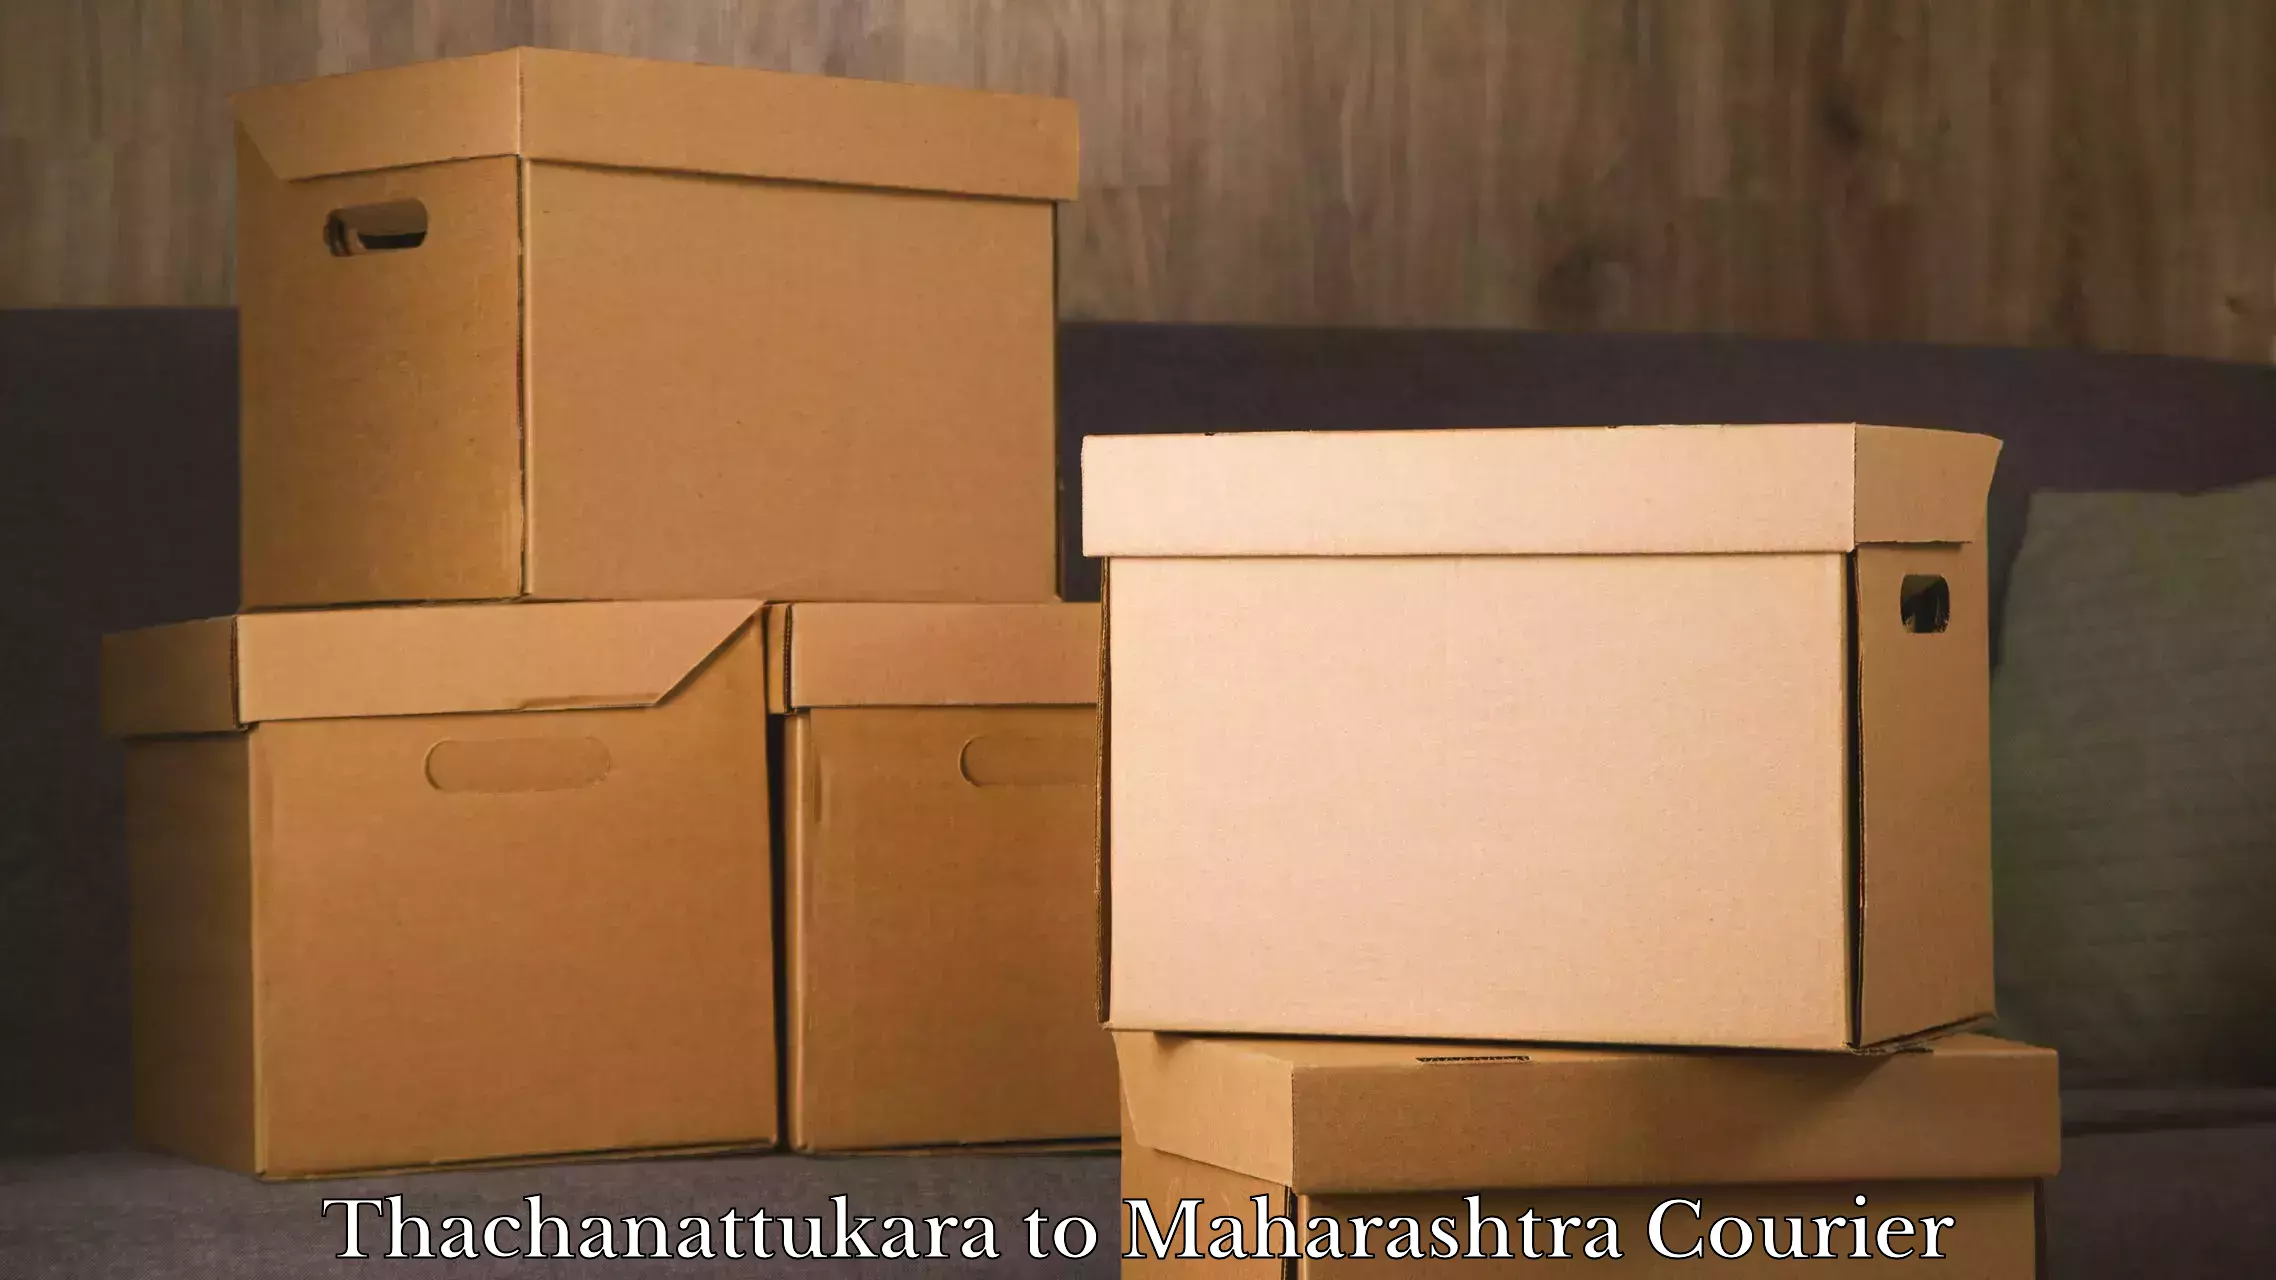 Express luggage delivery Thachanattukara to NIT Nagpur